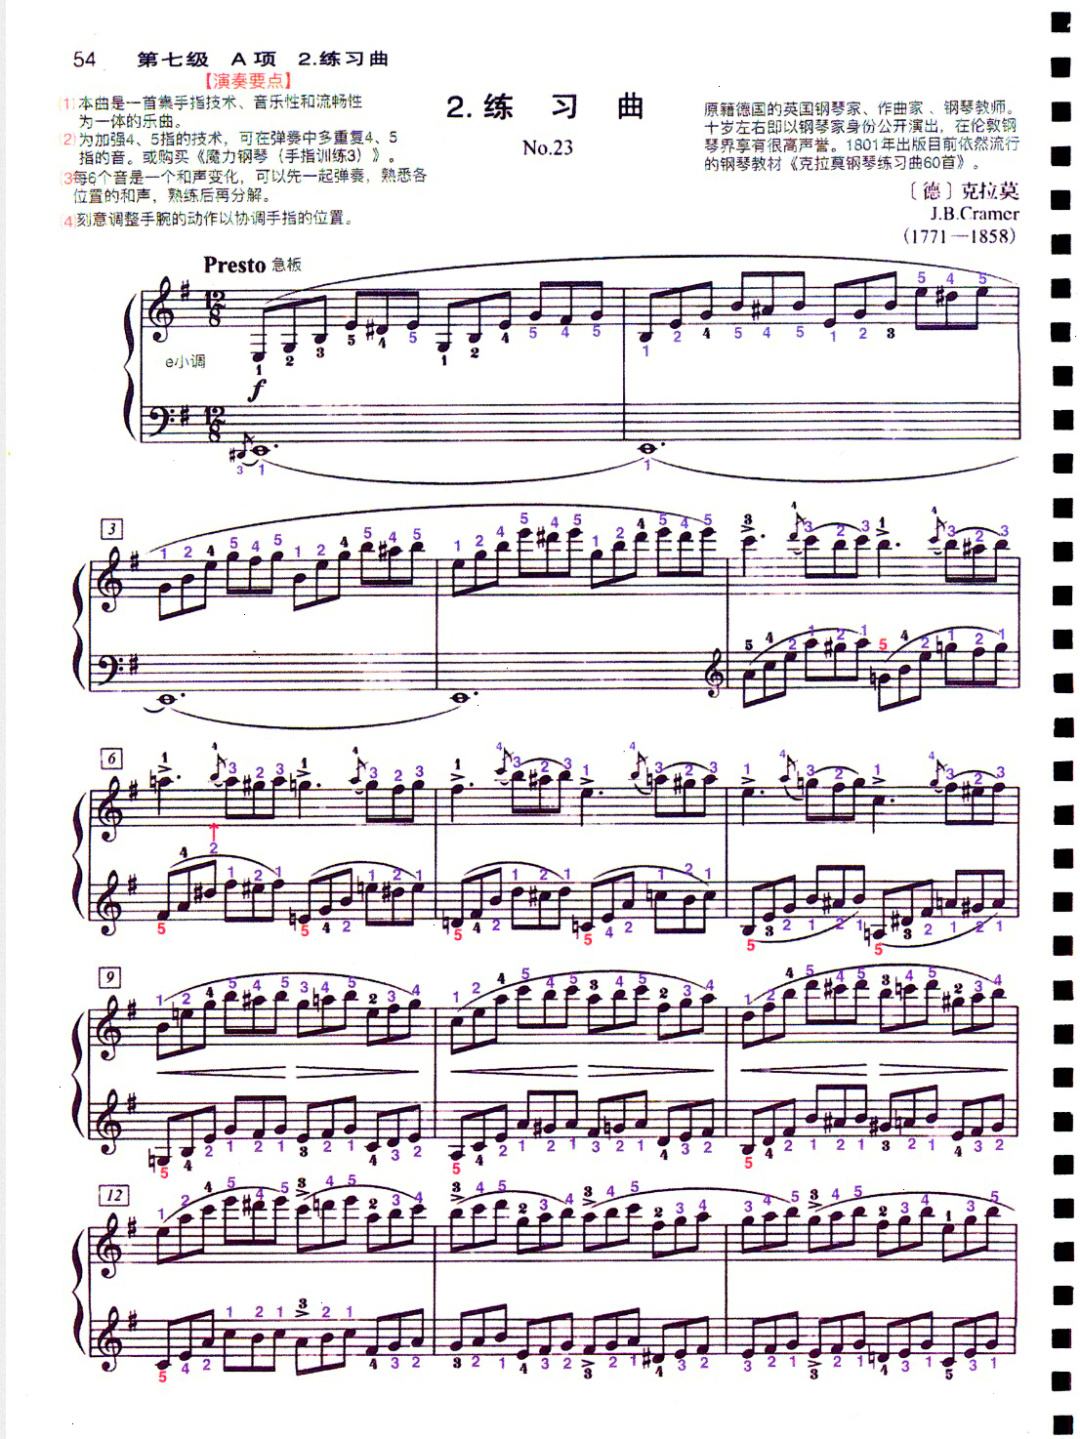 中国音协钢琴考级曲目(中国音协钢琴考级曲目六级)